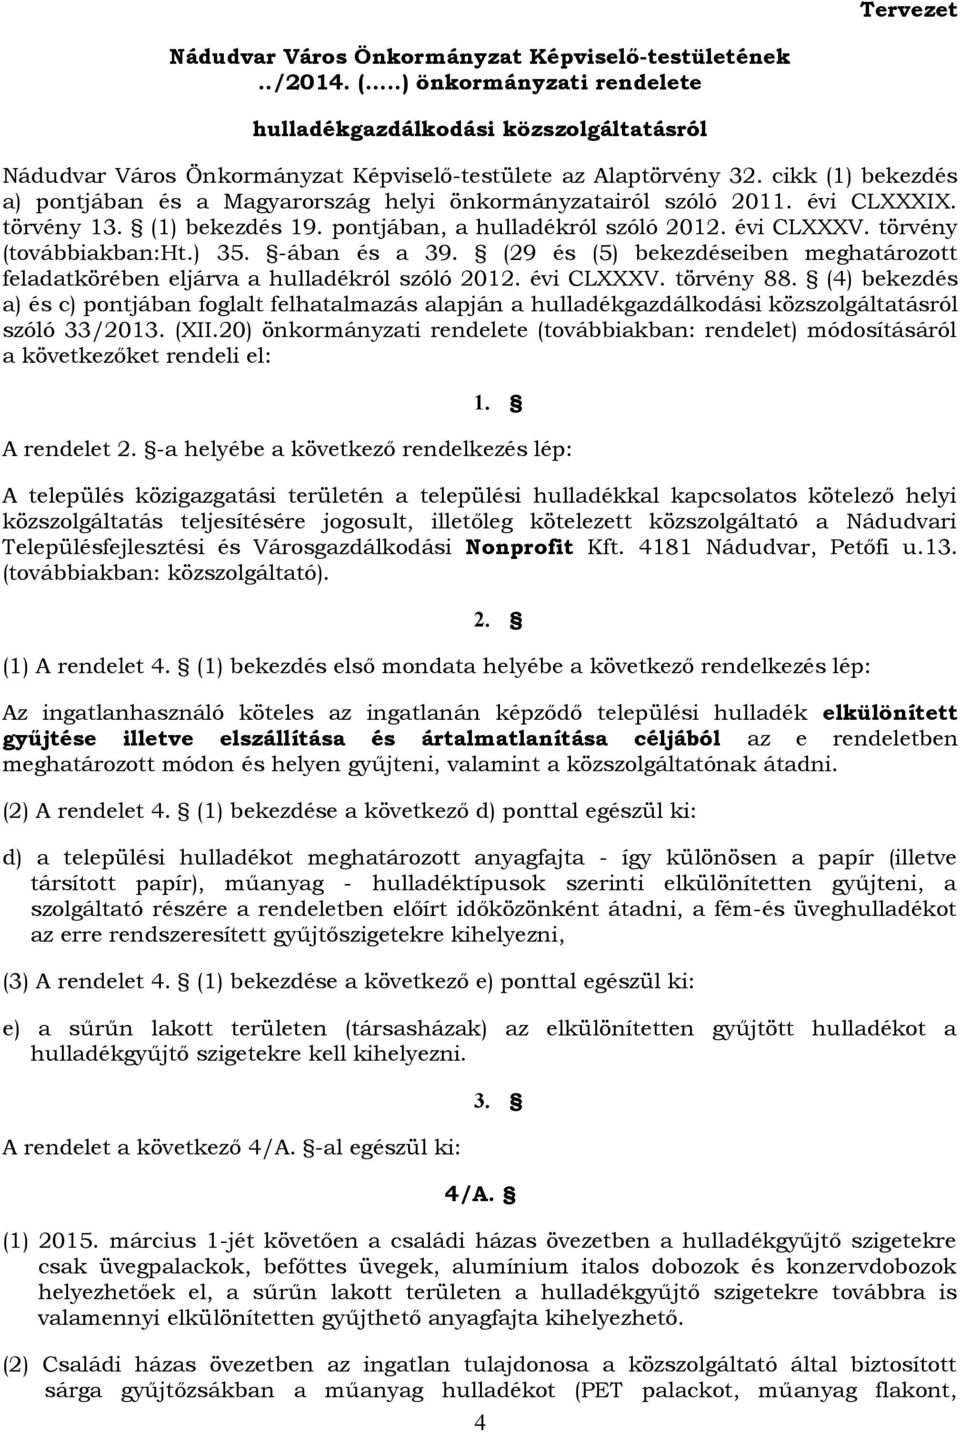 cikk (1) bekezdés a) pontjában és a Magyarország helyi önkormányzatairól szóló 2011. évi CLXXXIX. törvény 13. (1) bekezdés 19. pontjában, a hulladékról szóló 2012. évi CLXXXV.